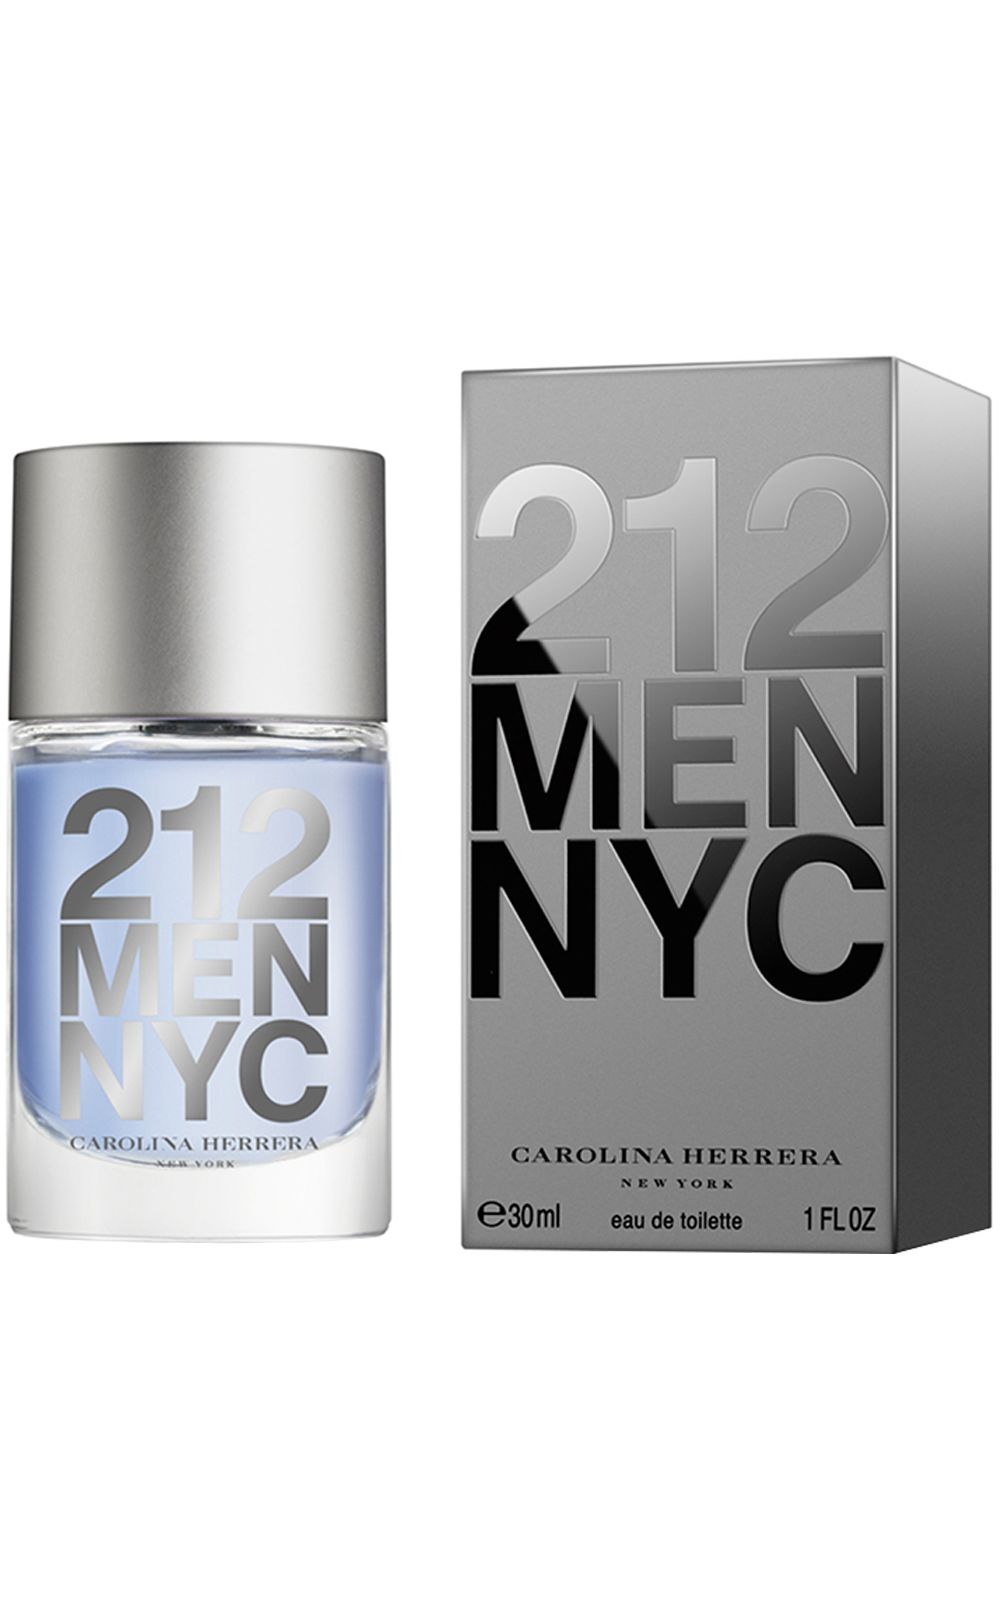 Foto 2 - 212 Men Nyc Carolina Herrera - Perfume Masculino - Eau de Toilette - 30ml